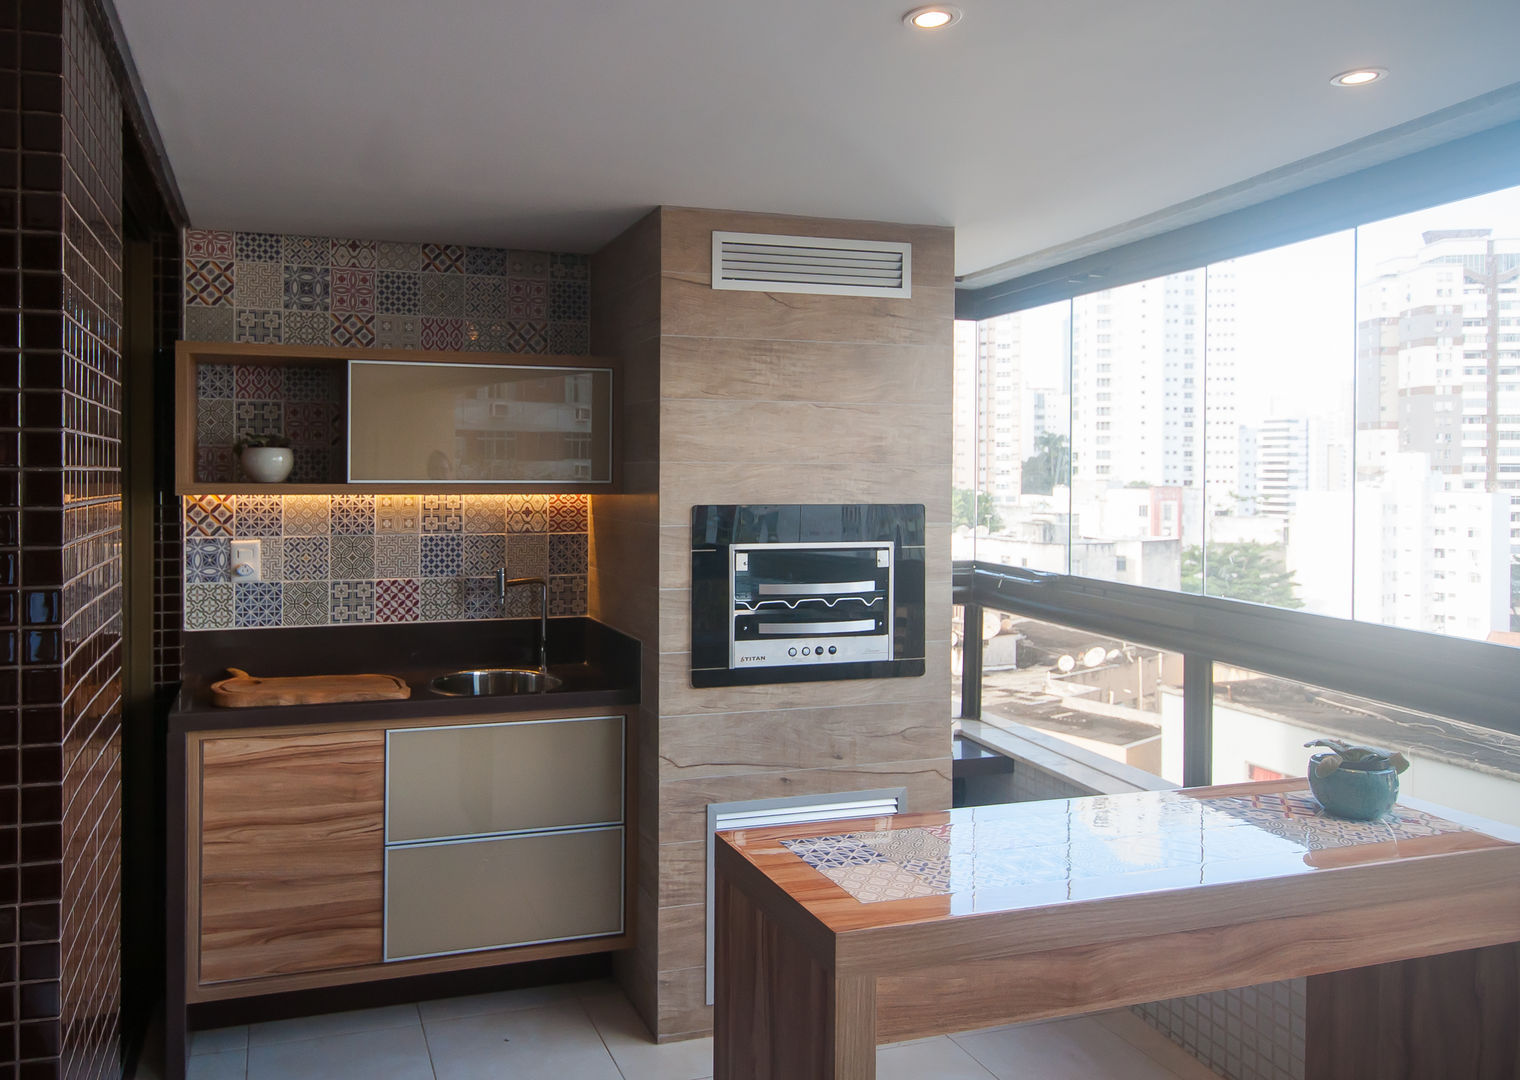 Apartamento com varanda gourmet, Bernal Projetos - Arquitetos em Salvador Bernal Projetos - Arquitetos em Salvador Patios & Decks